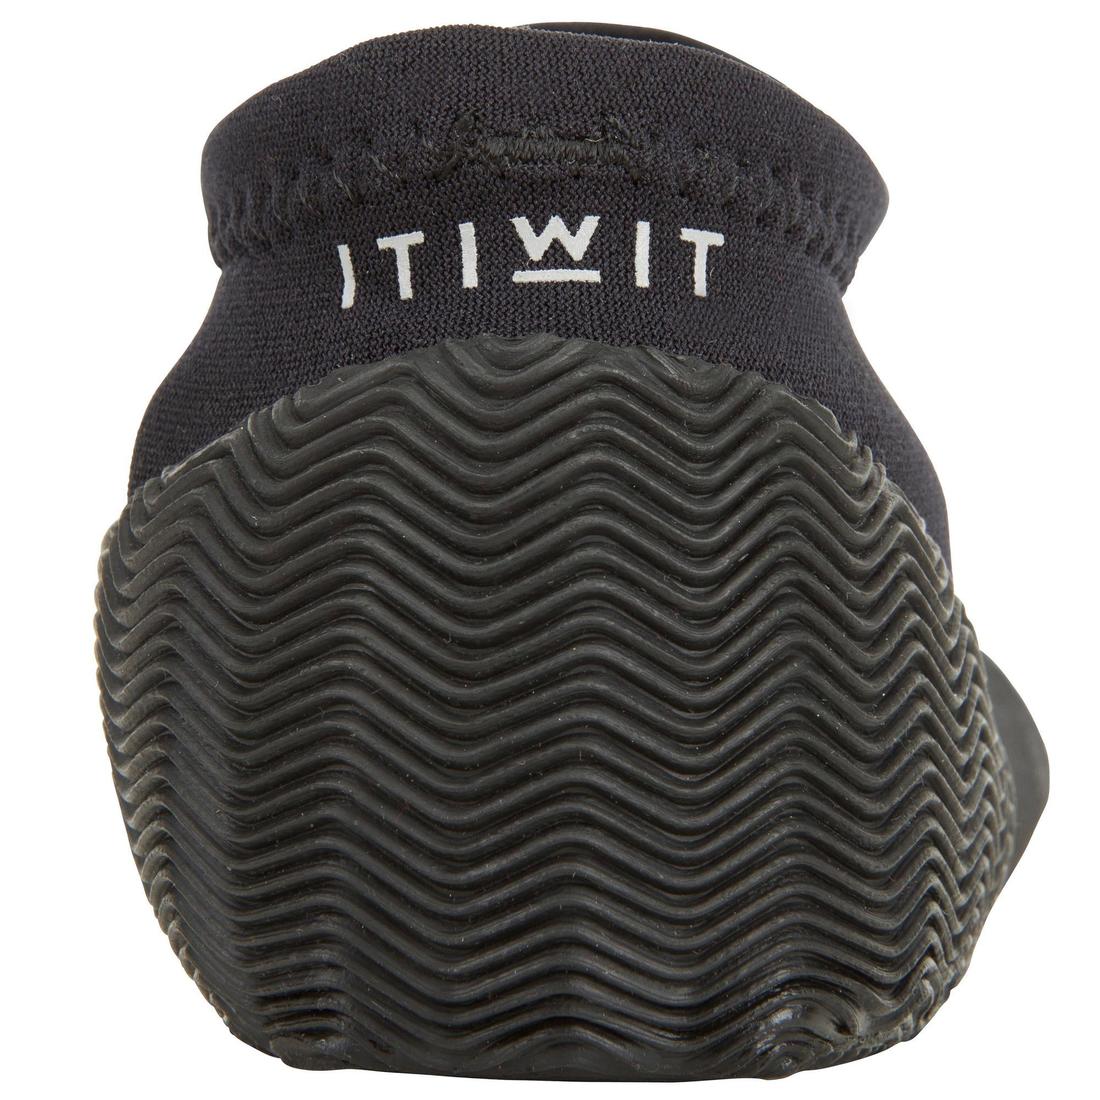 ITIWIT(イティウィ) カヤック・サップ SUP シューズ ネオプレン 1.5mm